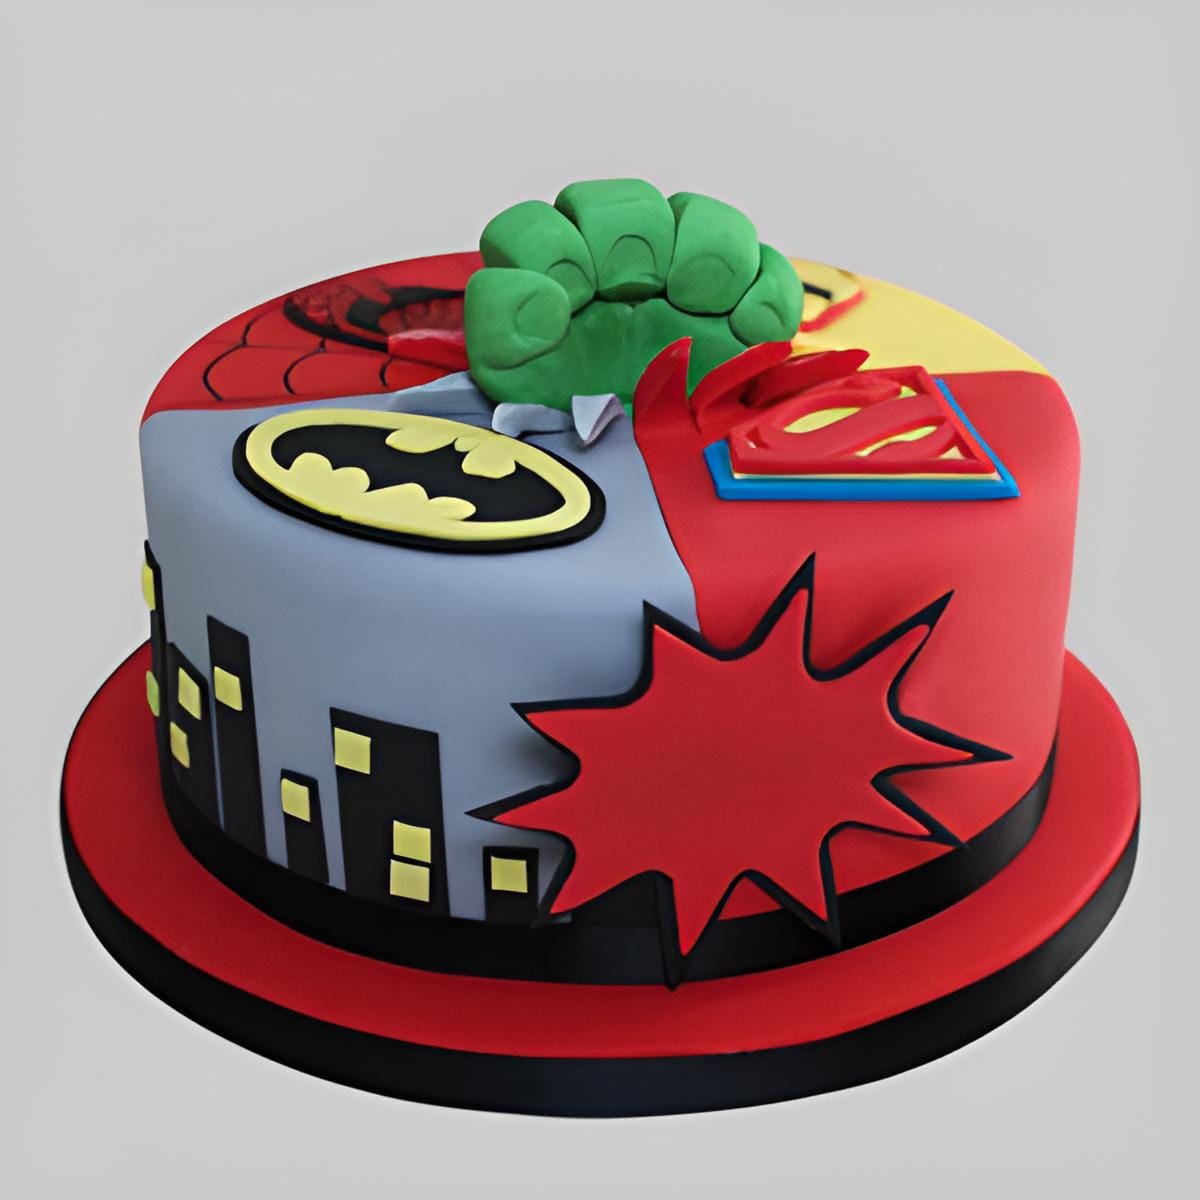 Marvel avengers rectangular cake edible image topper